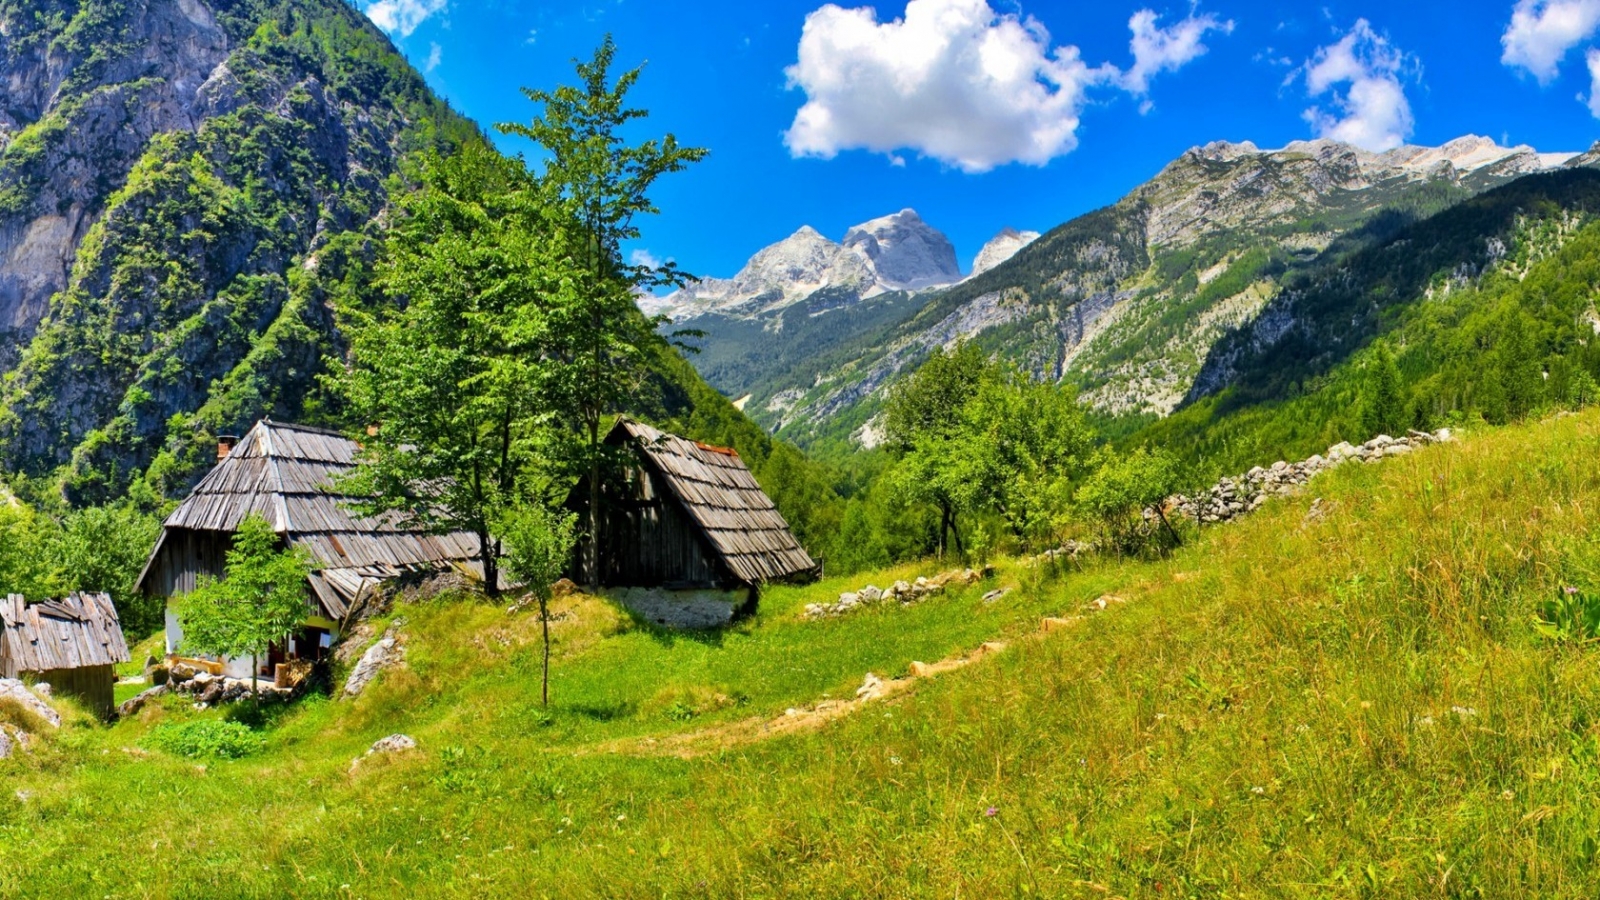 Slovenia Bovec Landscape for 1600 x 900 HDTV resolution